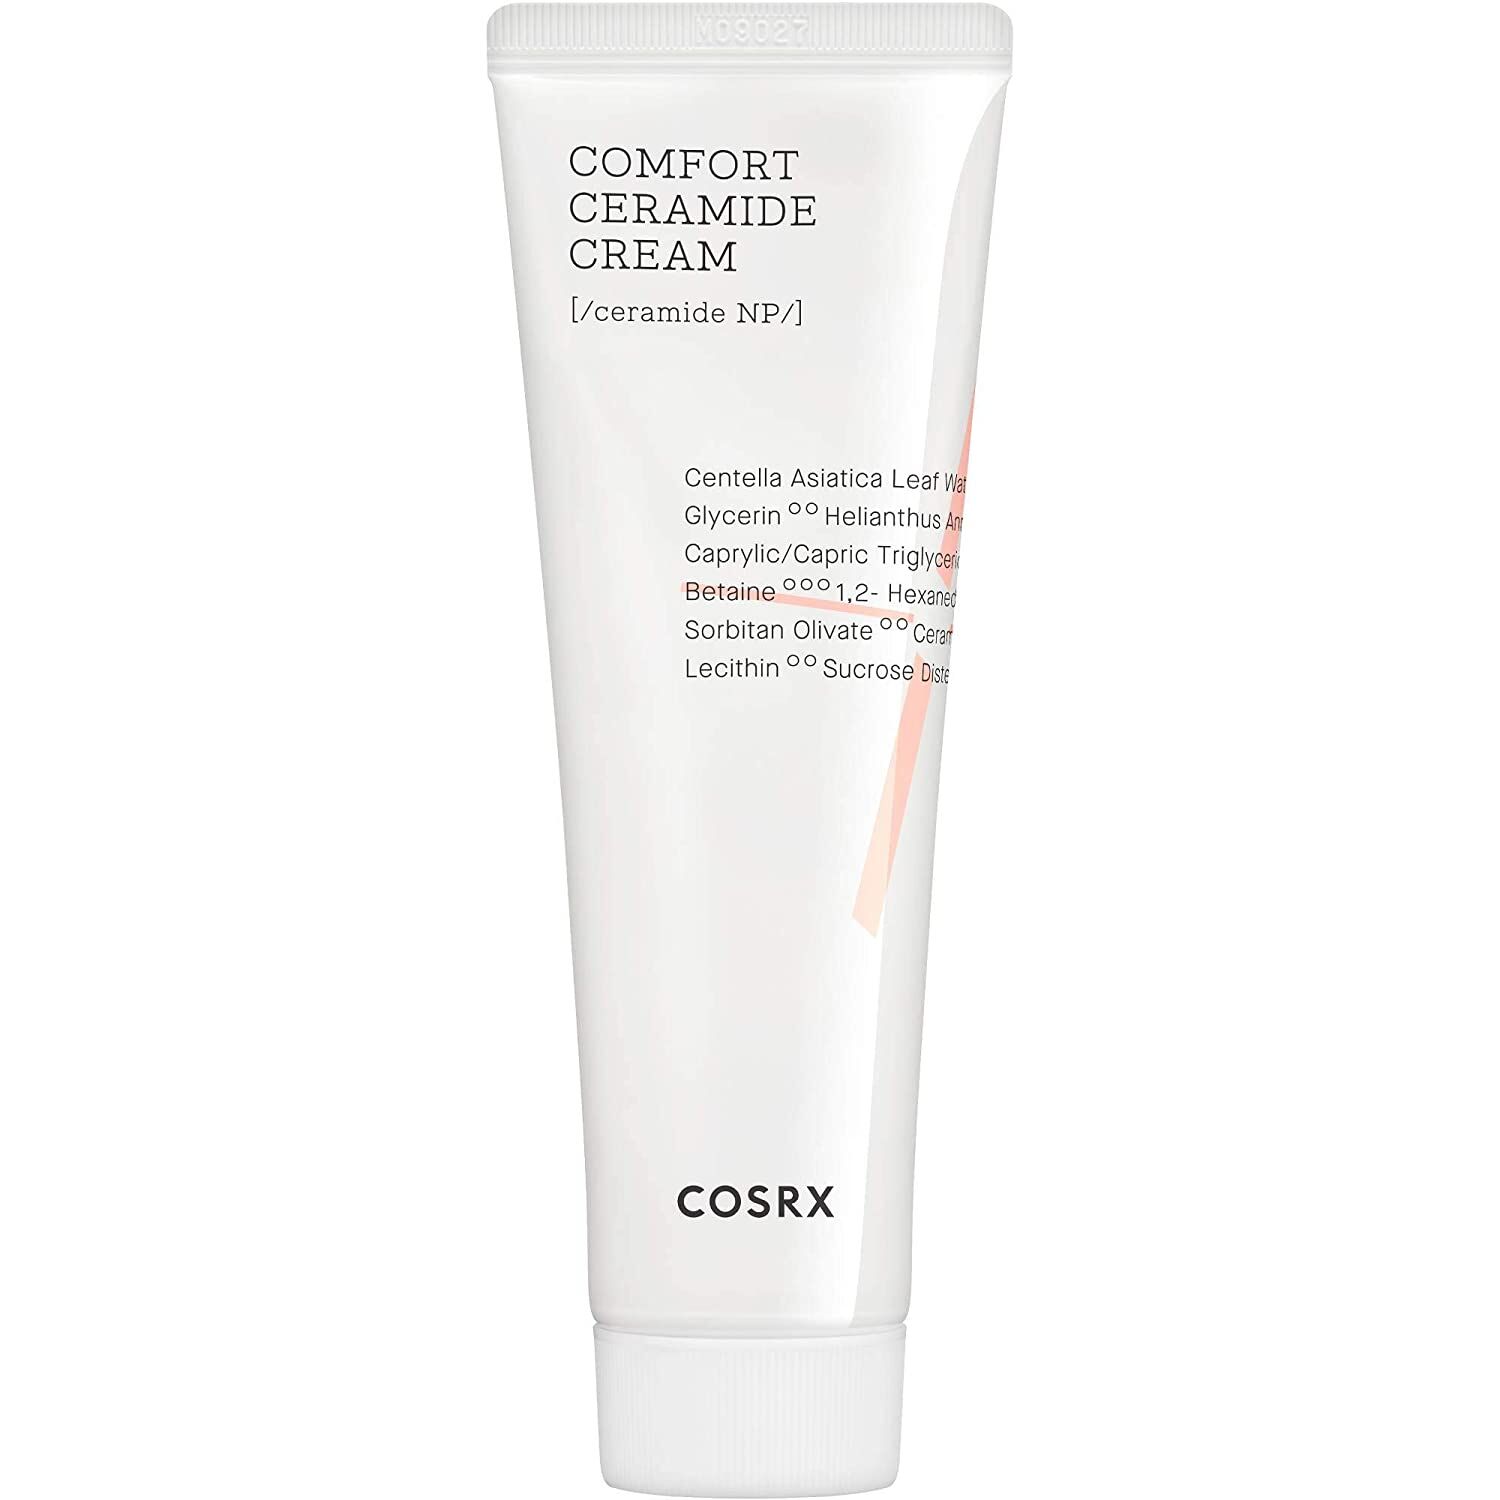 COSRx Balancium Comfort Ceramide Cream kaufen Deutschland bestellen Preisvergleich Rabatt Code Erfahrungen Test Review